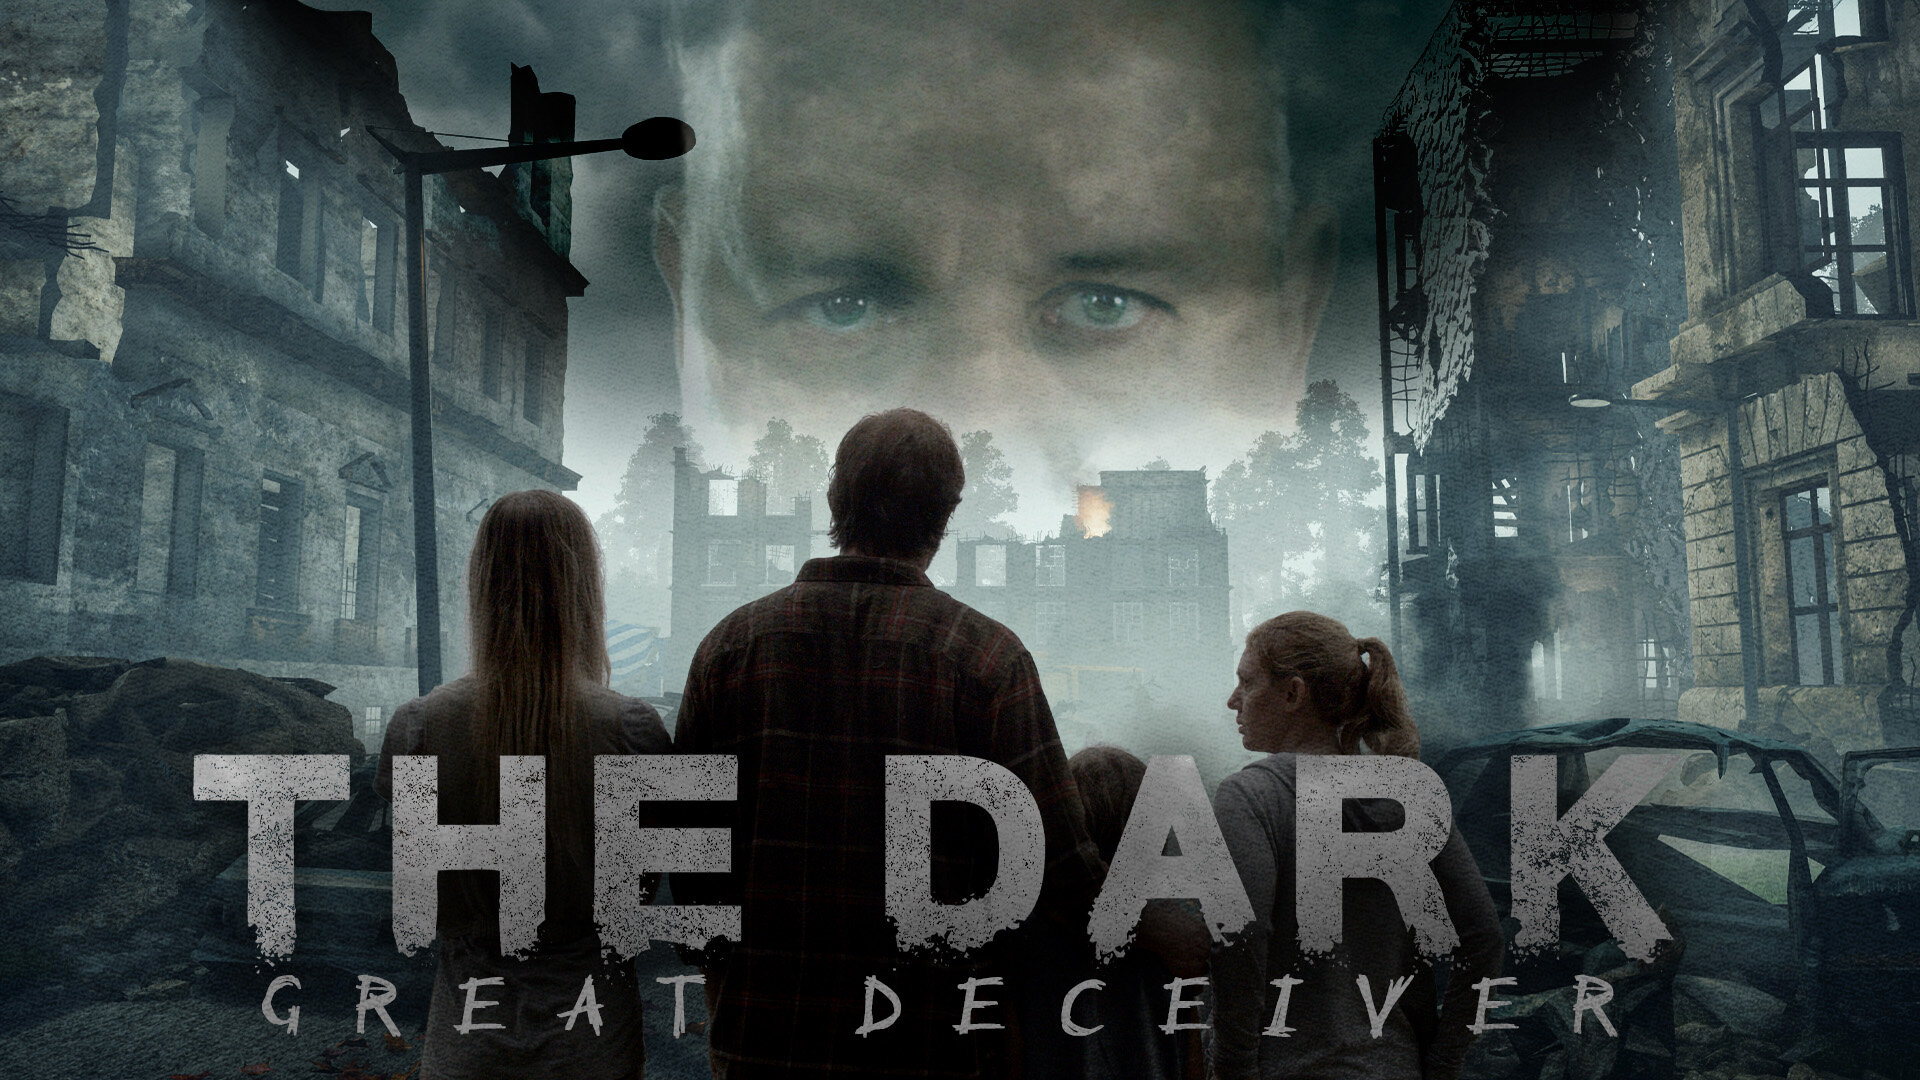 5016 - The Dark_Great Deceiver_1920x1080.jpg